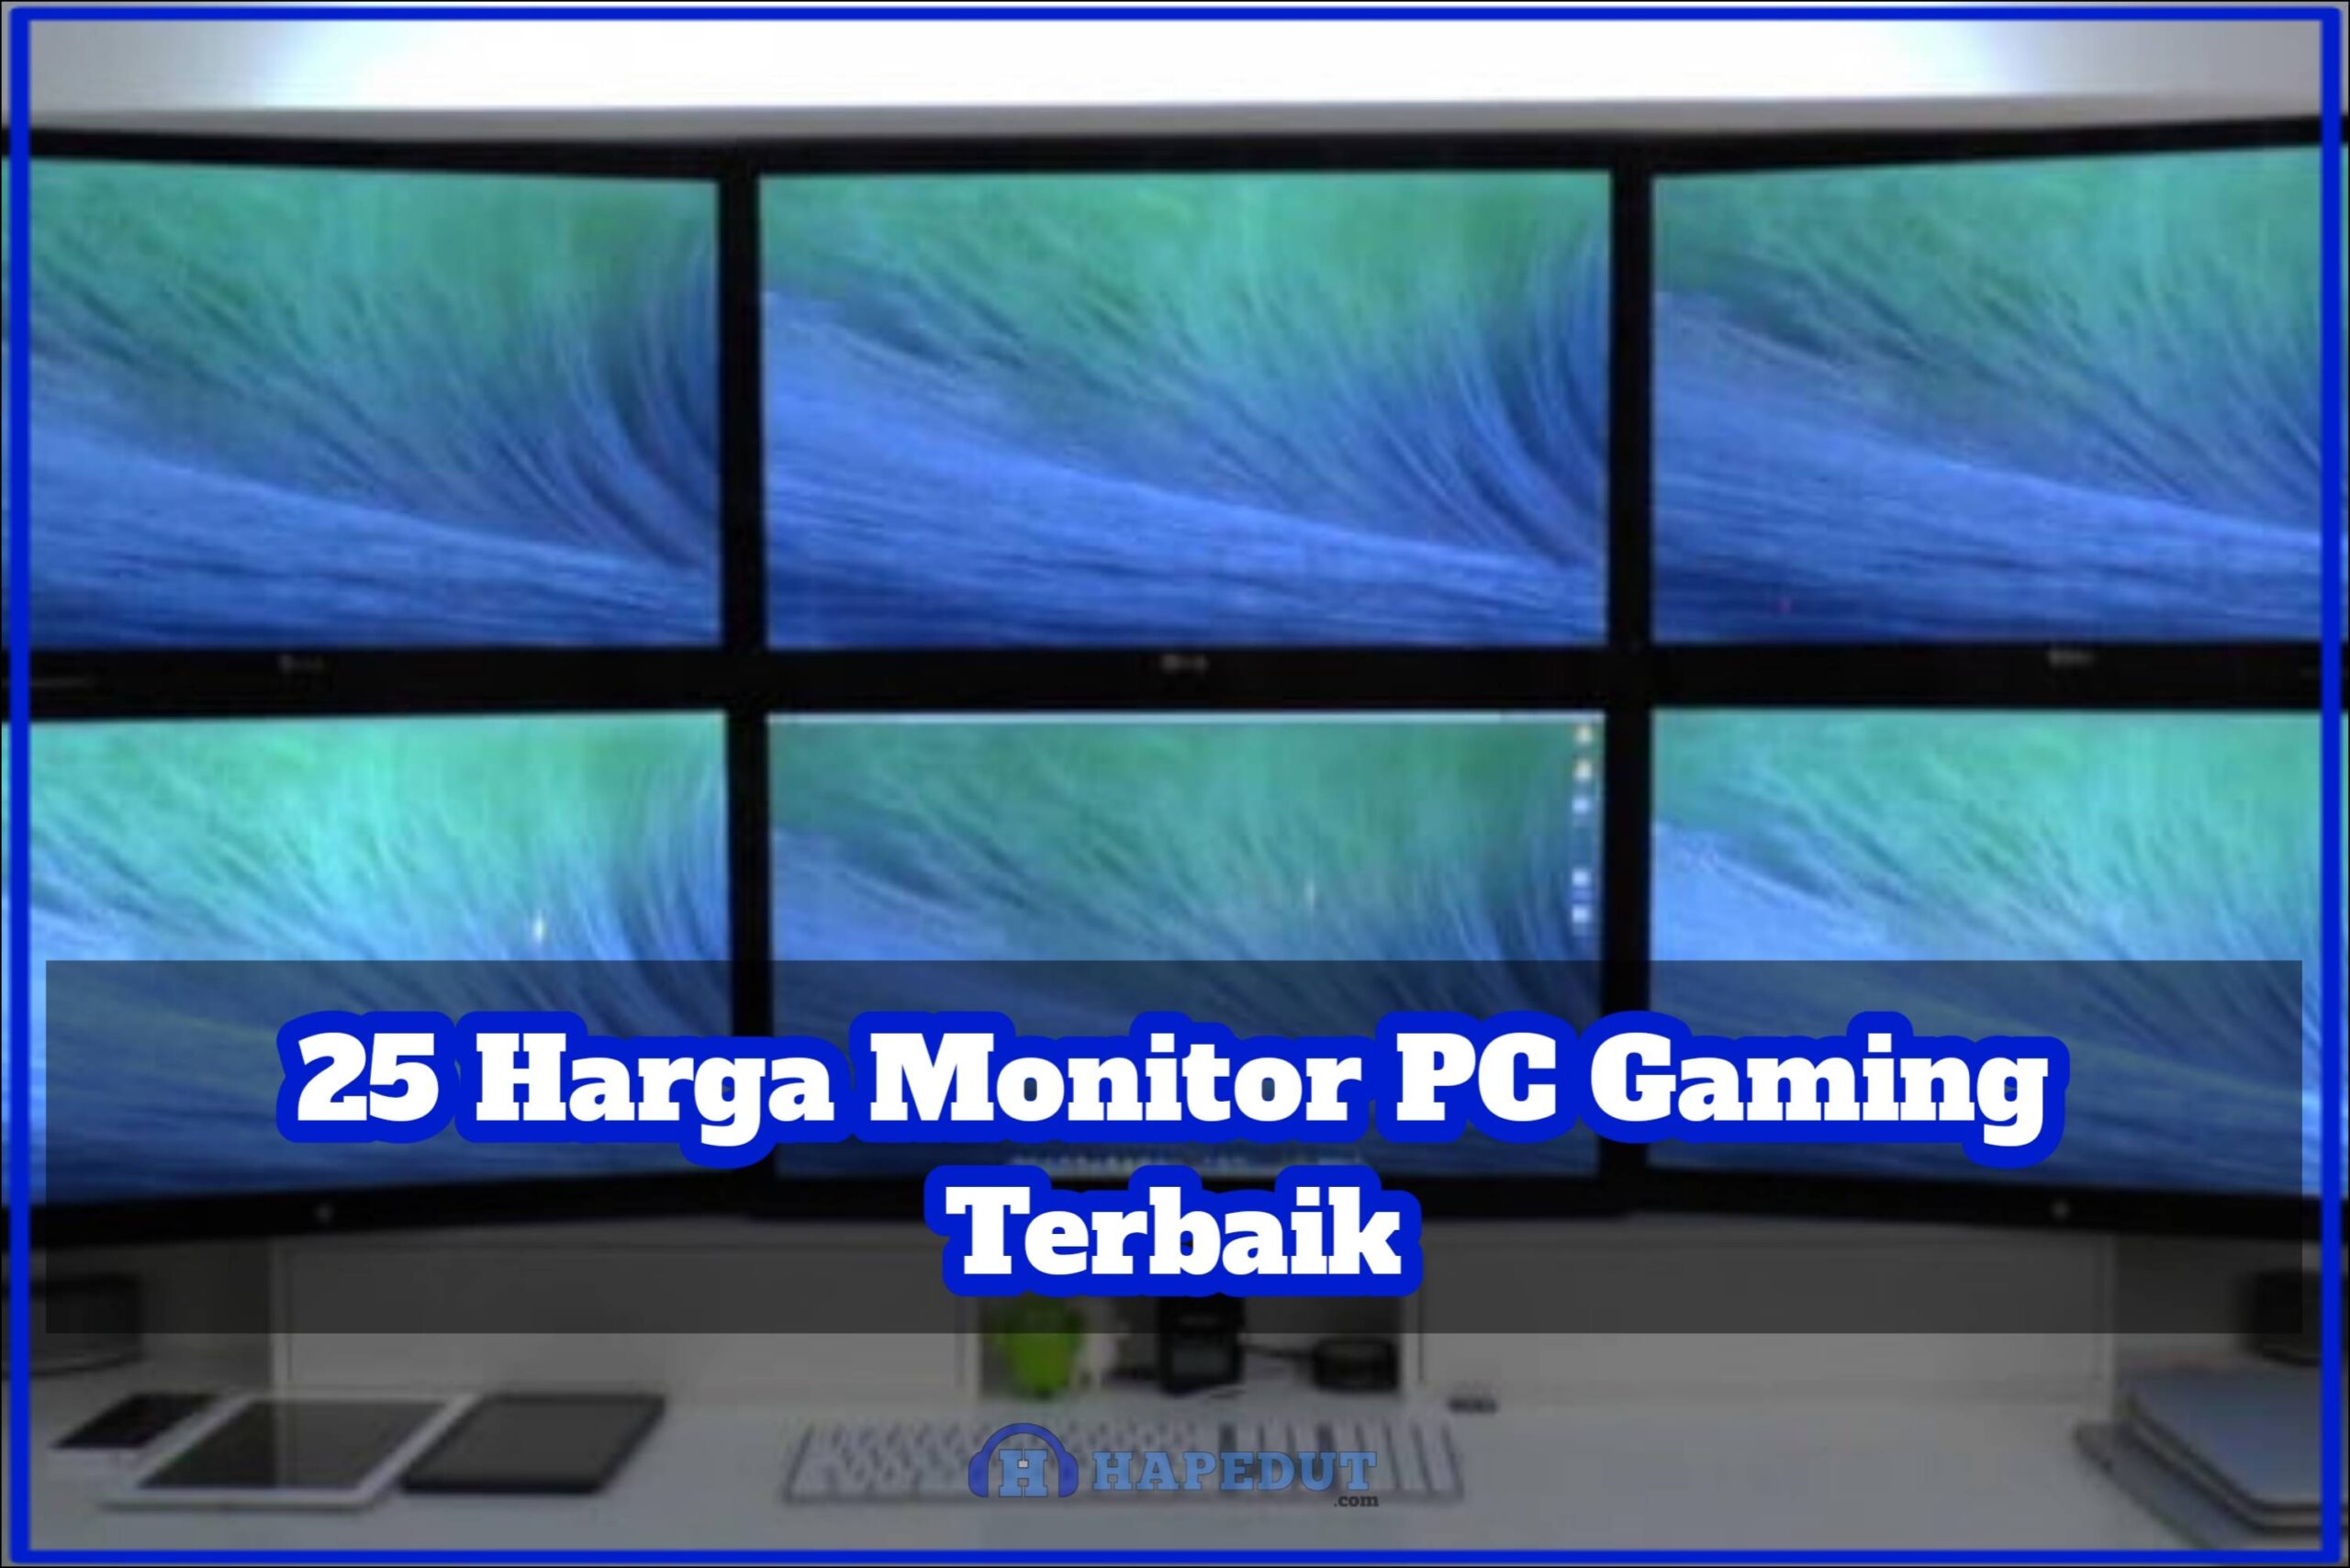 25 Harga Monitor PC Gaming Terbaik